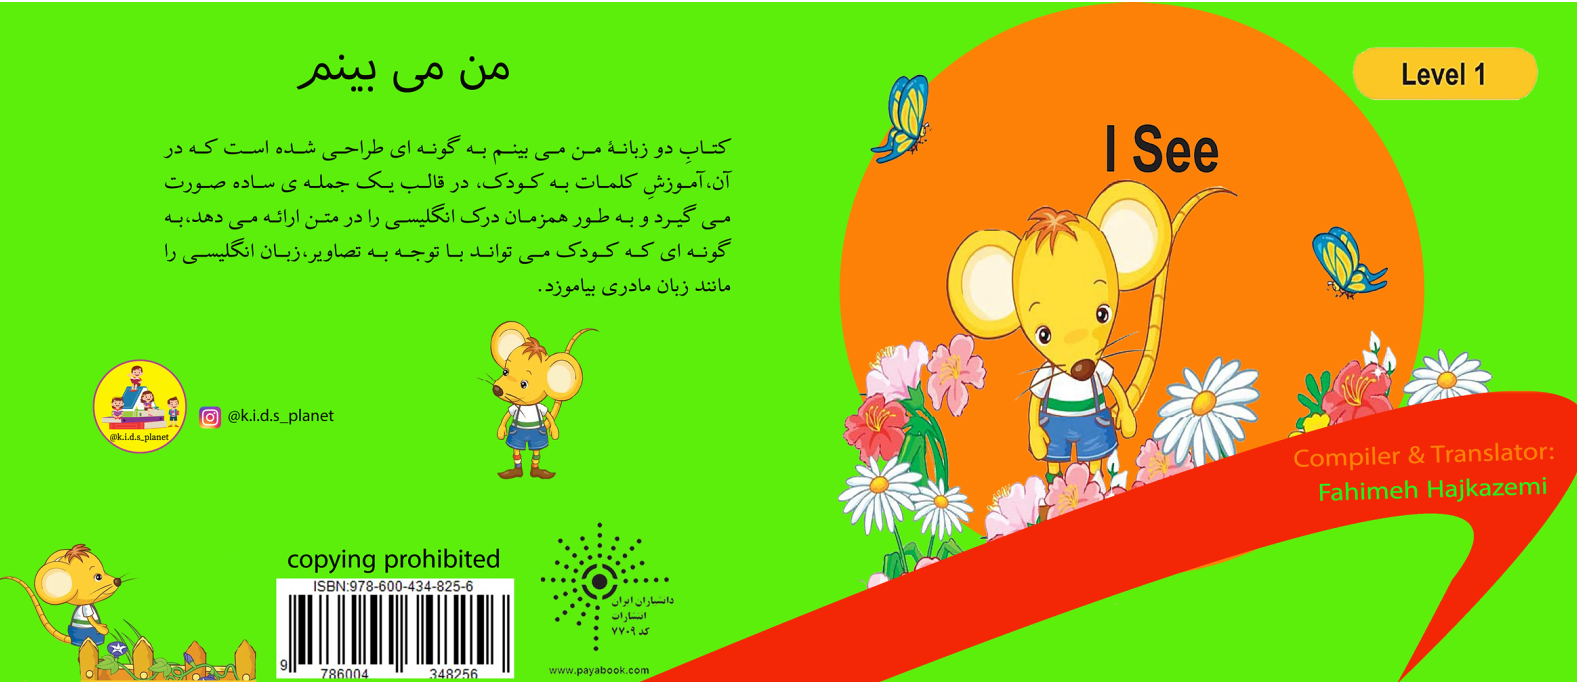 فهیمه حاج کاظمی مولف کتاب کودک